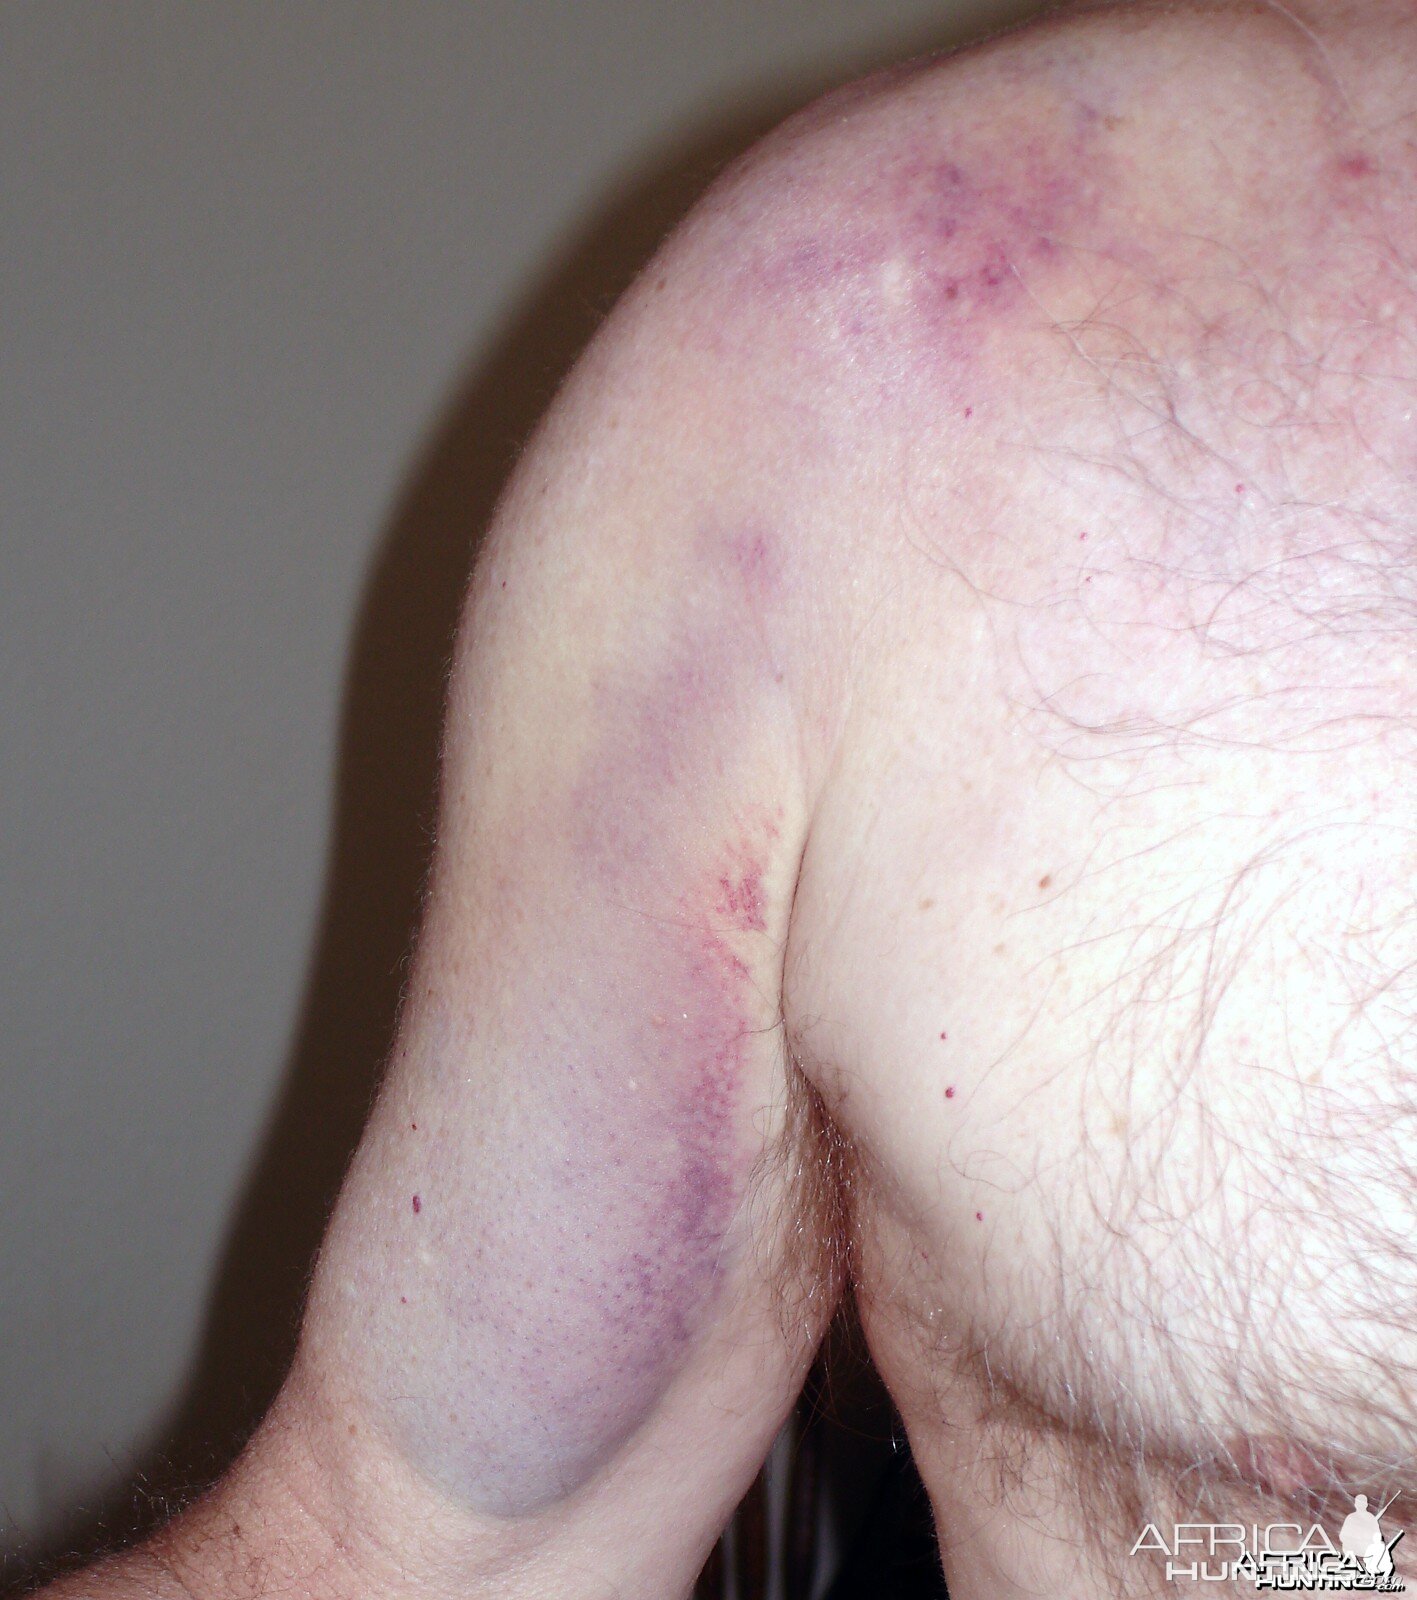 bruise on shoulder